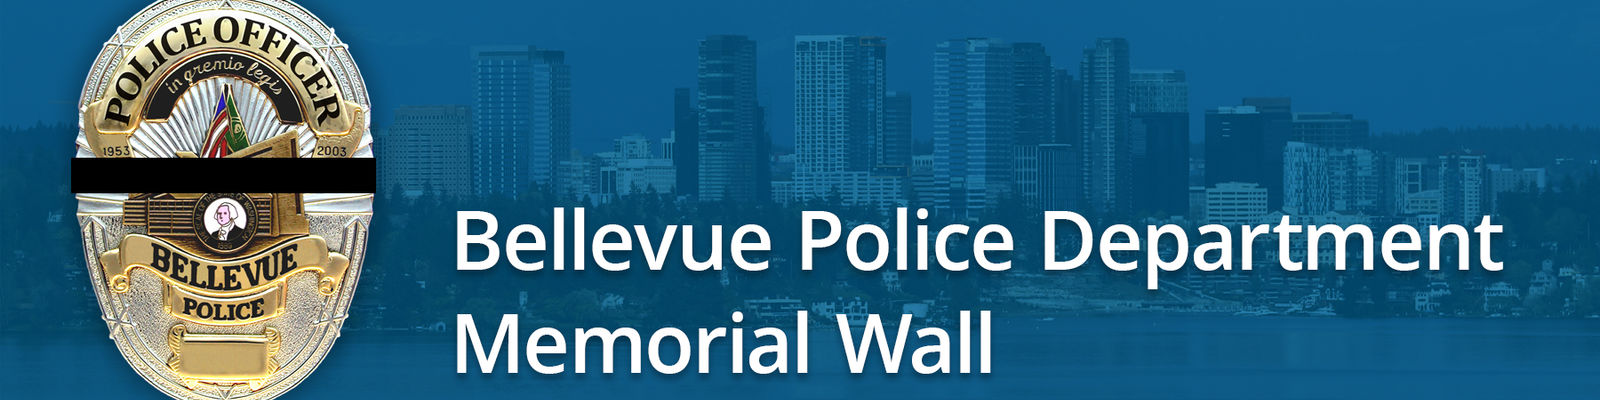 Bellevue Police Department Memorial Wall 